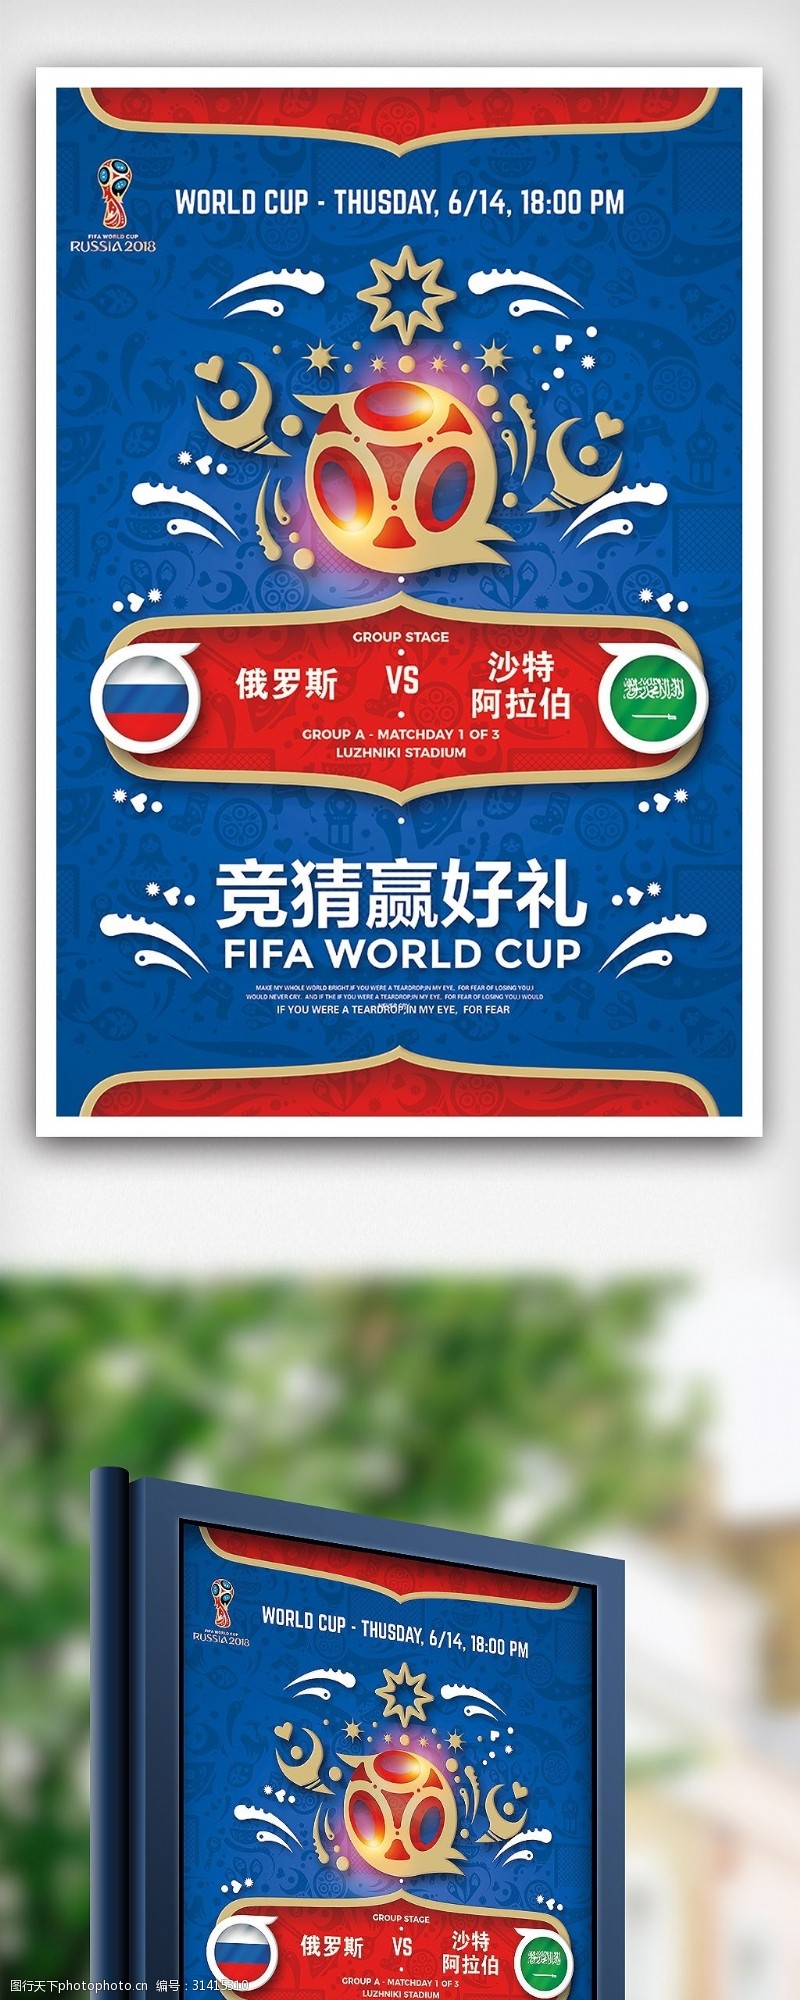 足球图片素材下载俄罗斯世界杯足球竞猜海报